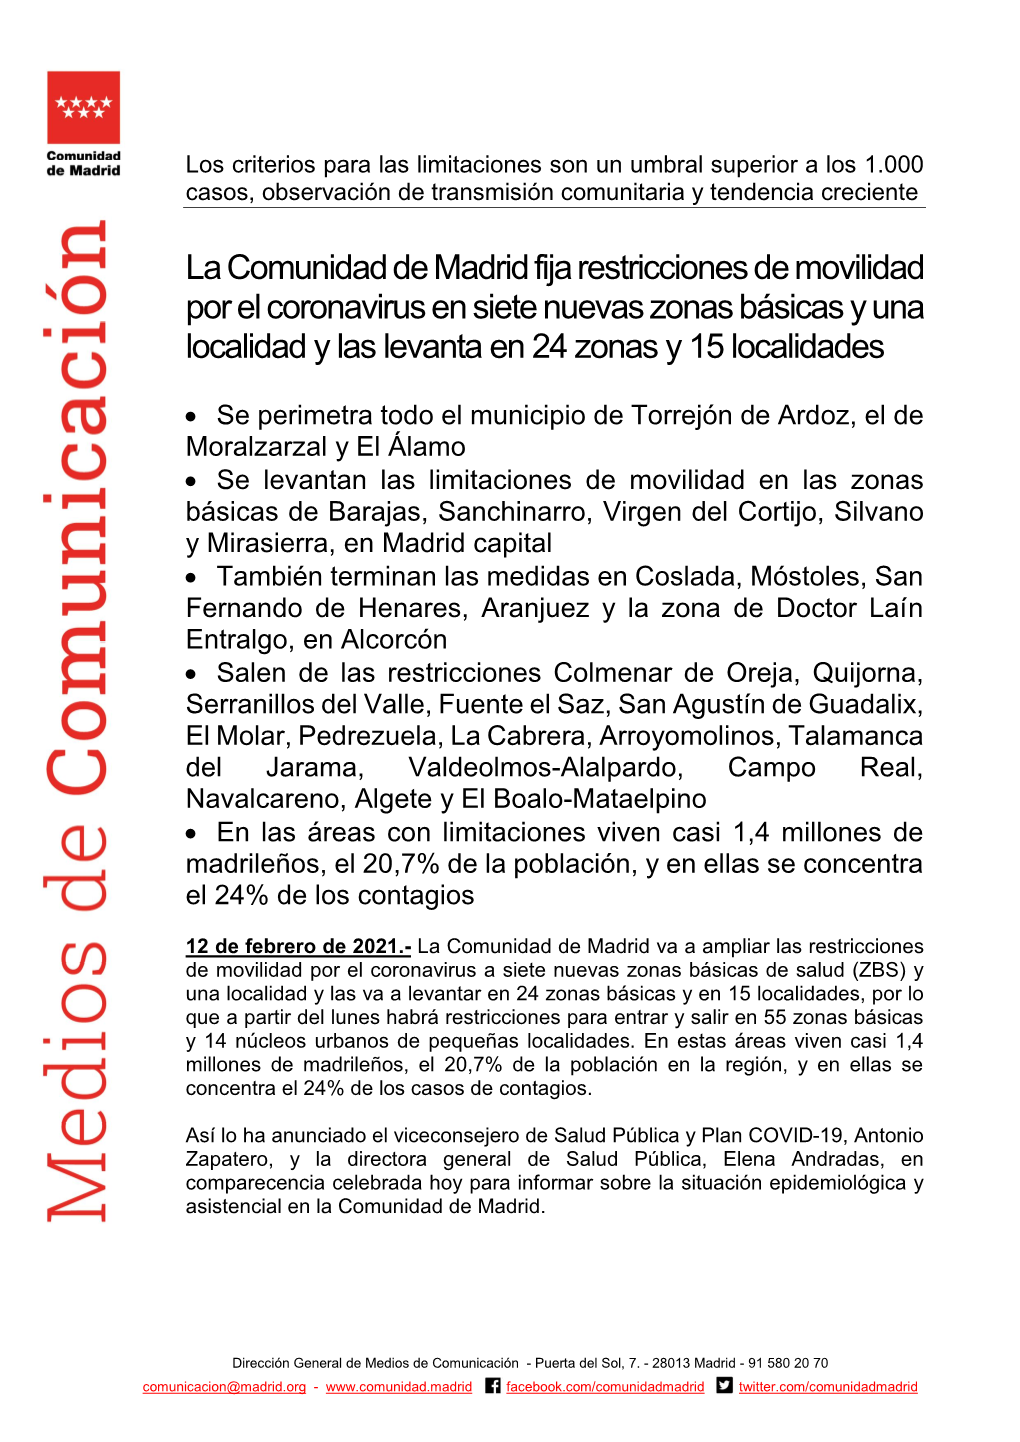 La Comunidad De Madrid Fija Restricciones De Movilidad Por El Coronavirus En Siete Nuevas Zonas Básicas Y Una Localidad Y Las Levanta En 24 Zonas Y 15 Localidades